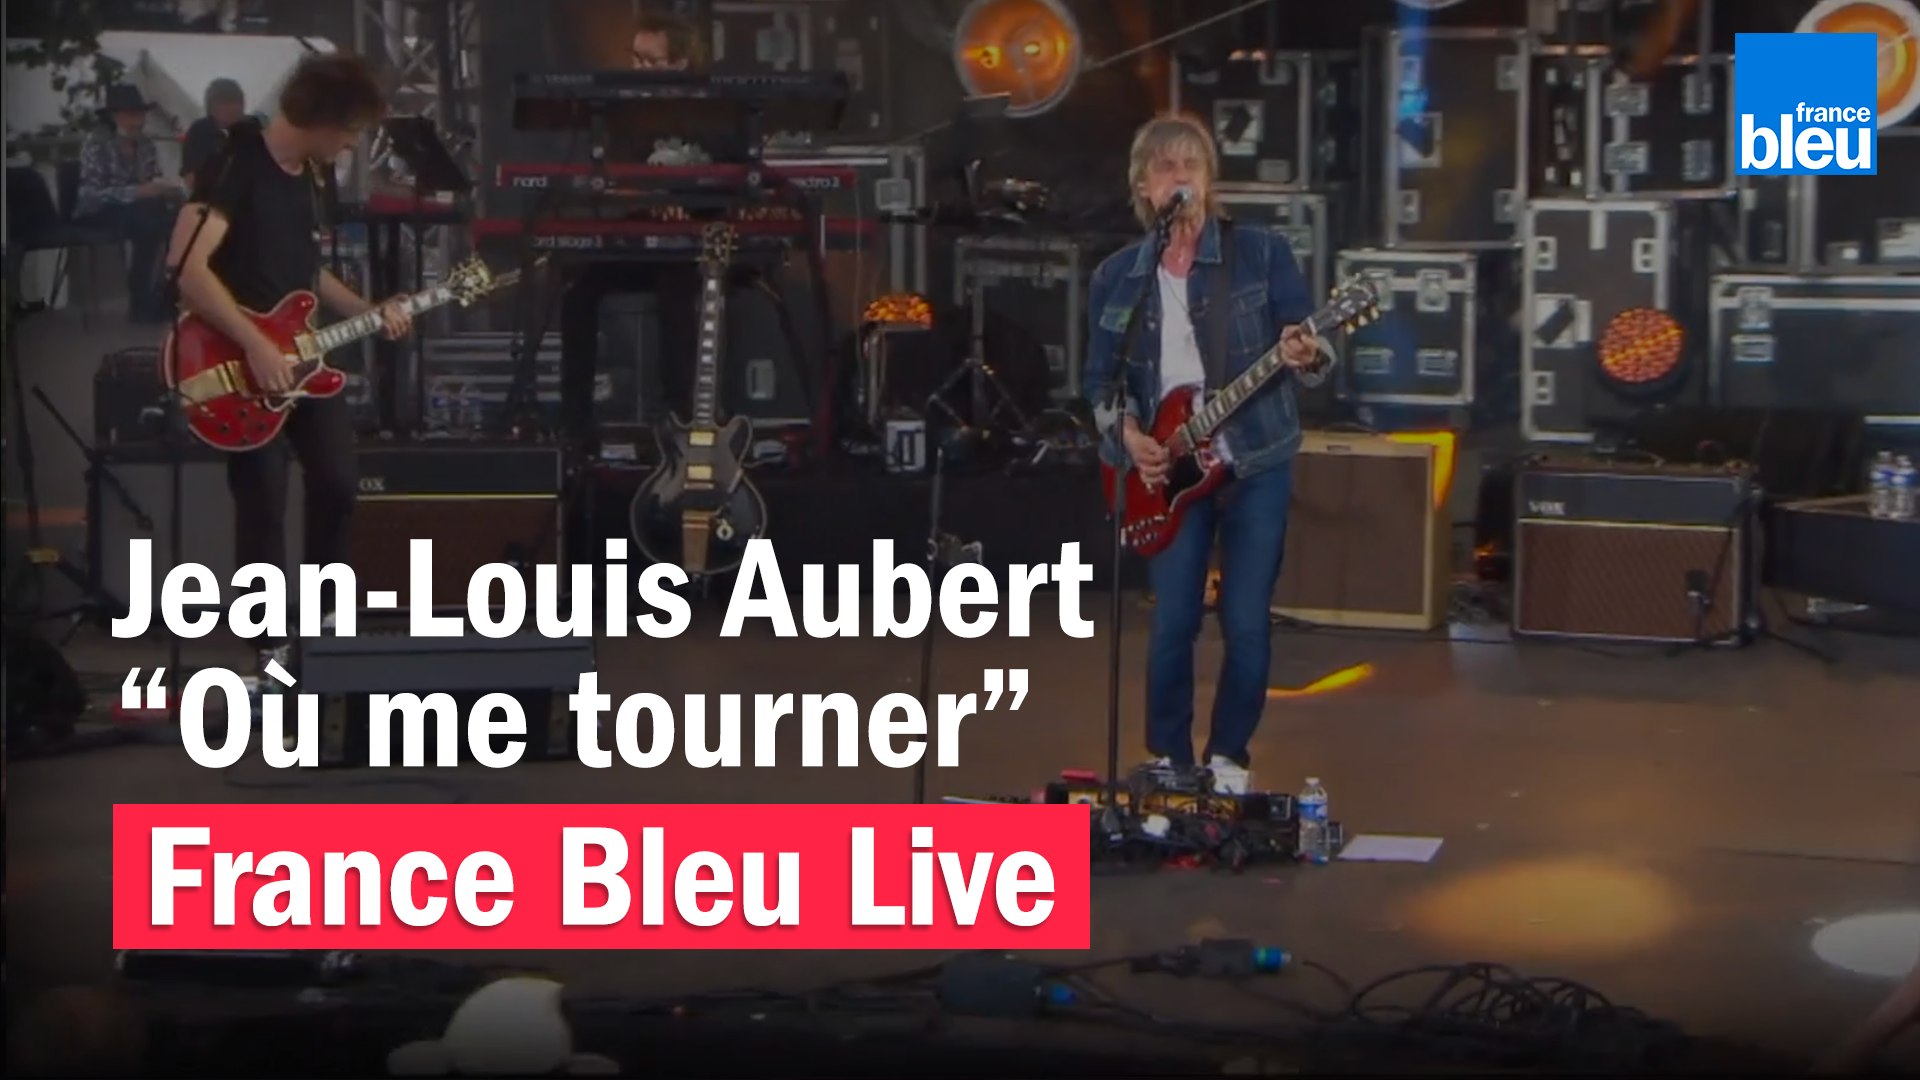 Jean-Louis Aubert "Où me tourner" - France Bleu Live - Vidéo Dailymotion